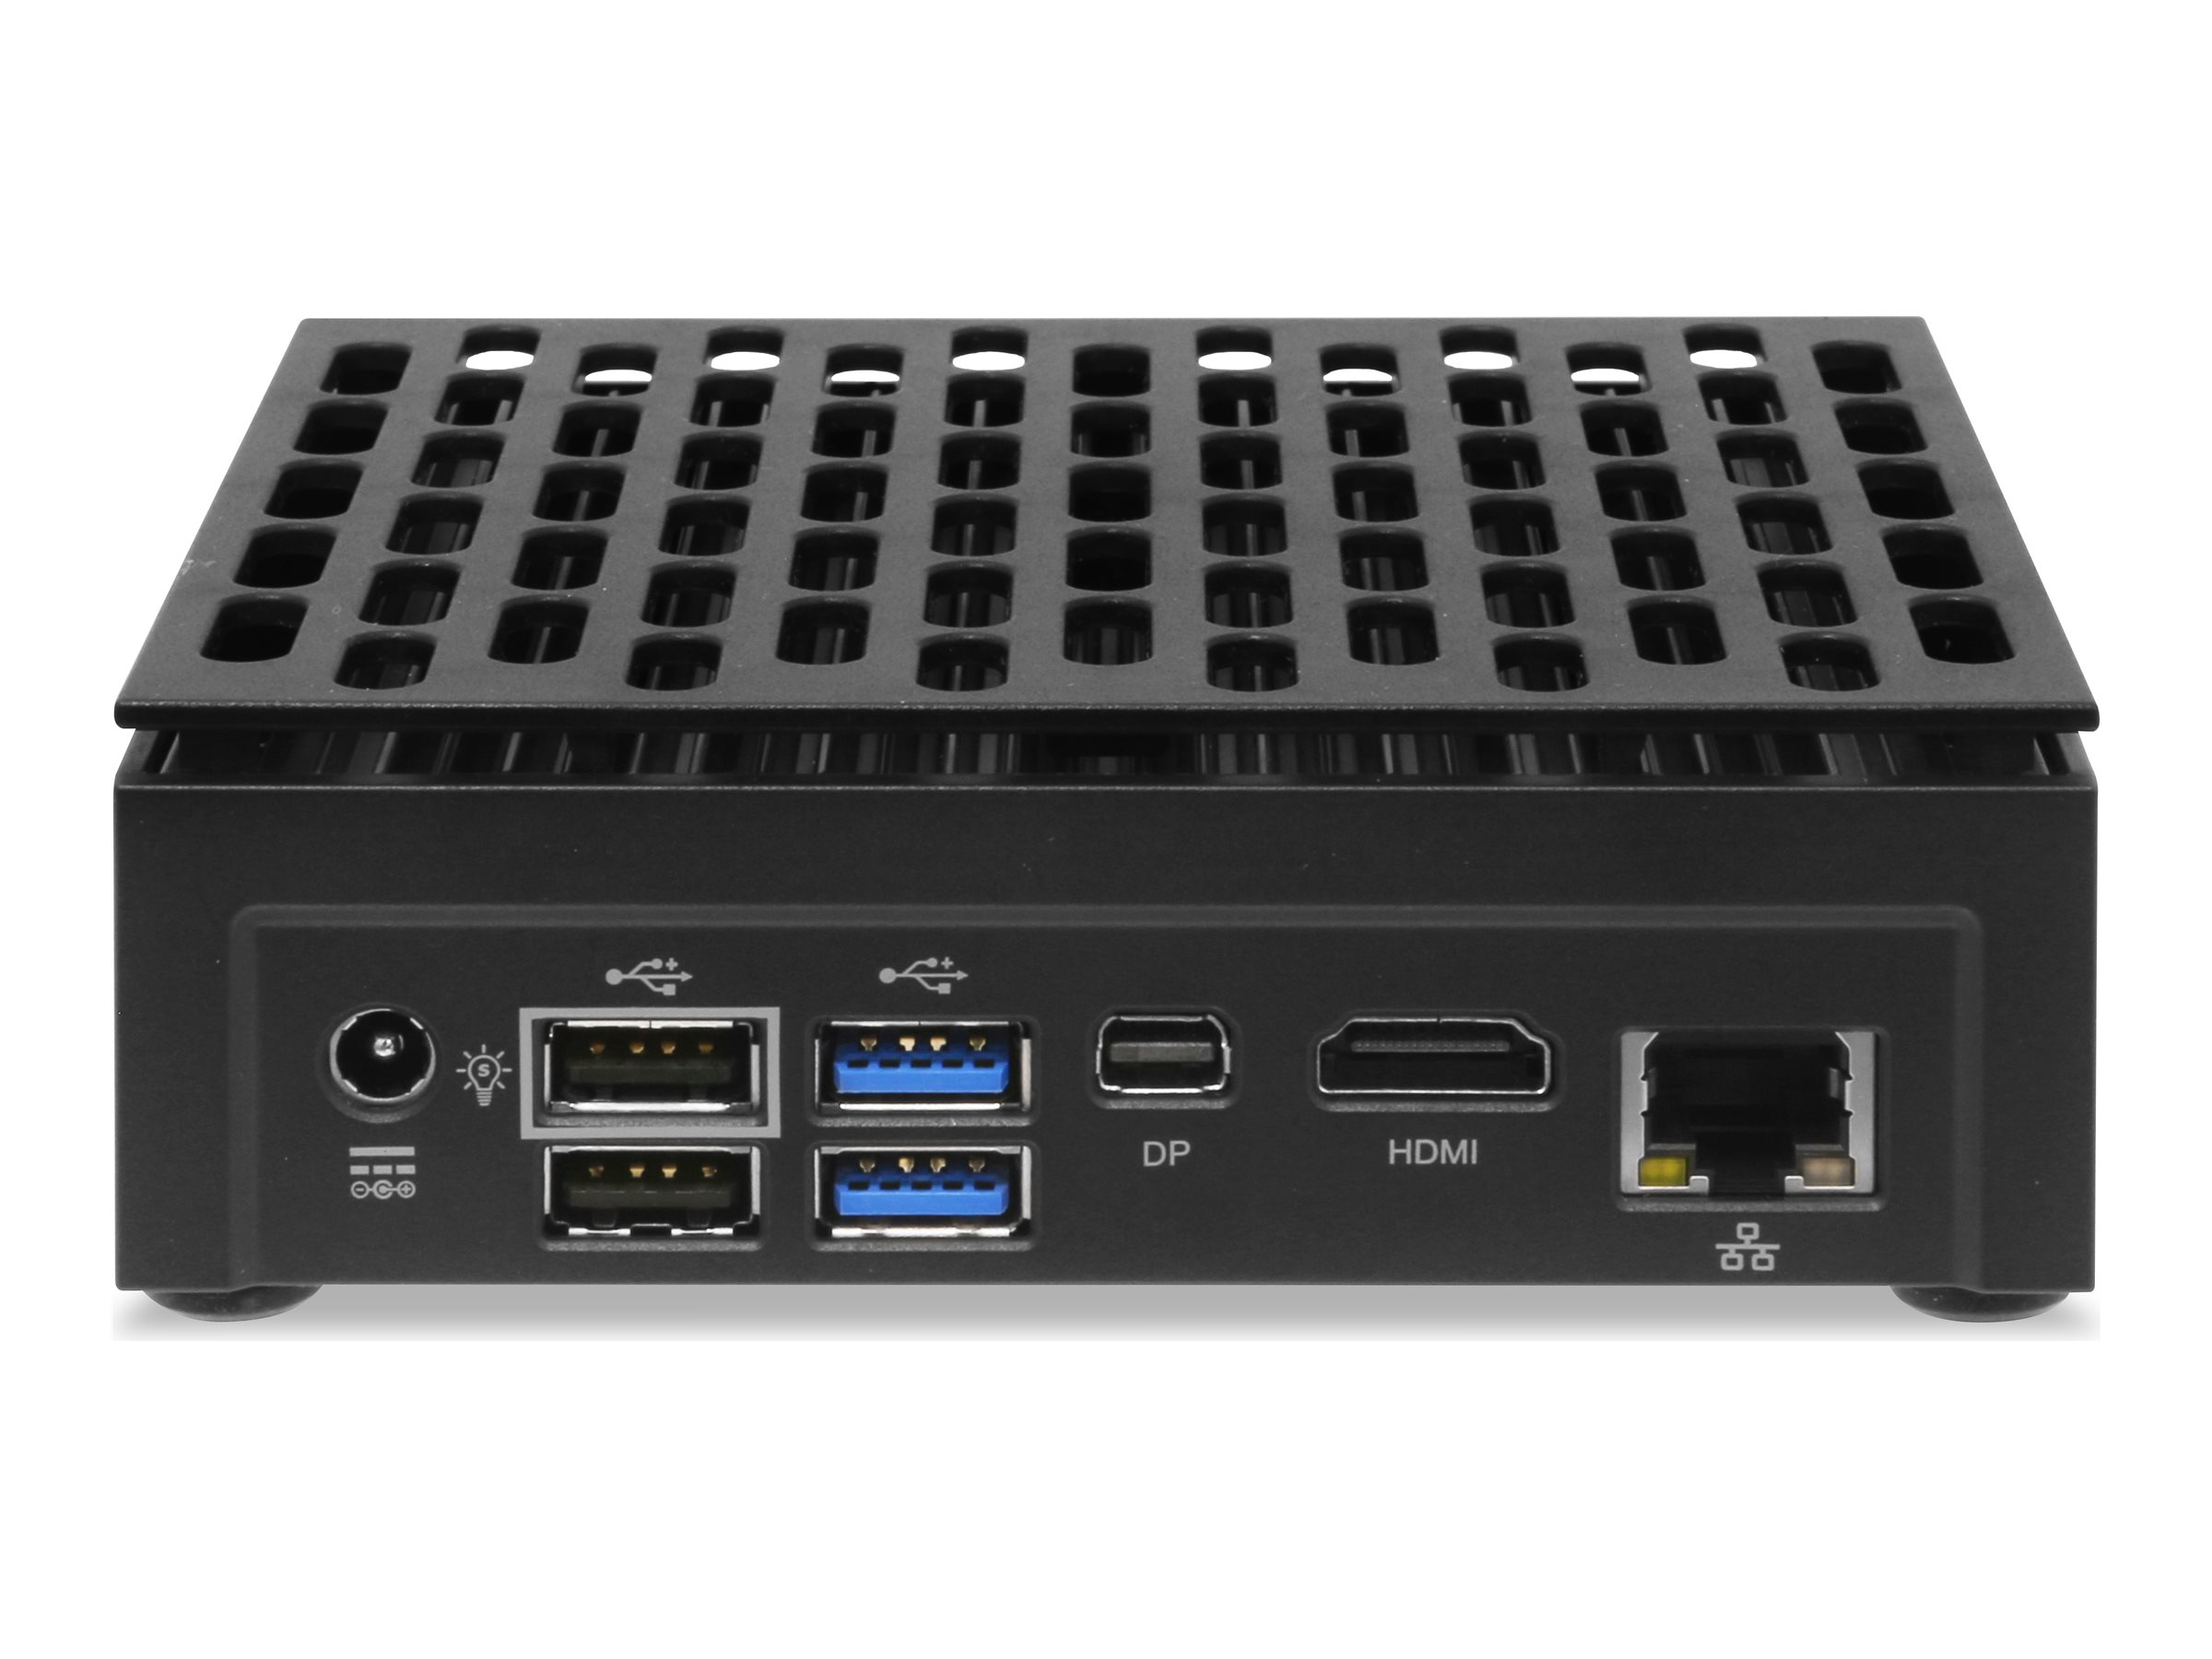 AOpen DE3650-S - Lecteur de signalisation numérique - 8 Go RAM - Intel Celeron - SSD - Windows 10 IoT - noir - 491.DER00.0140 - Lecteurs d'affichage numérique